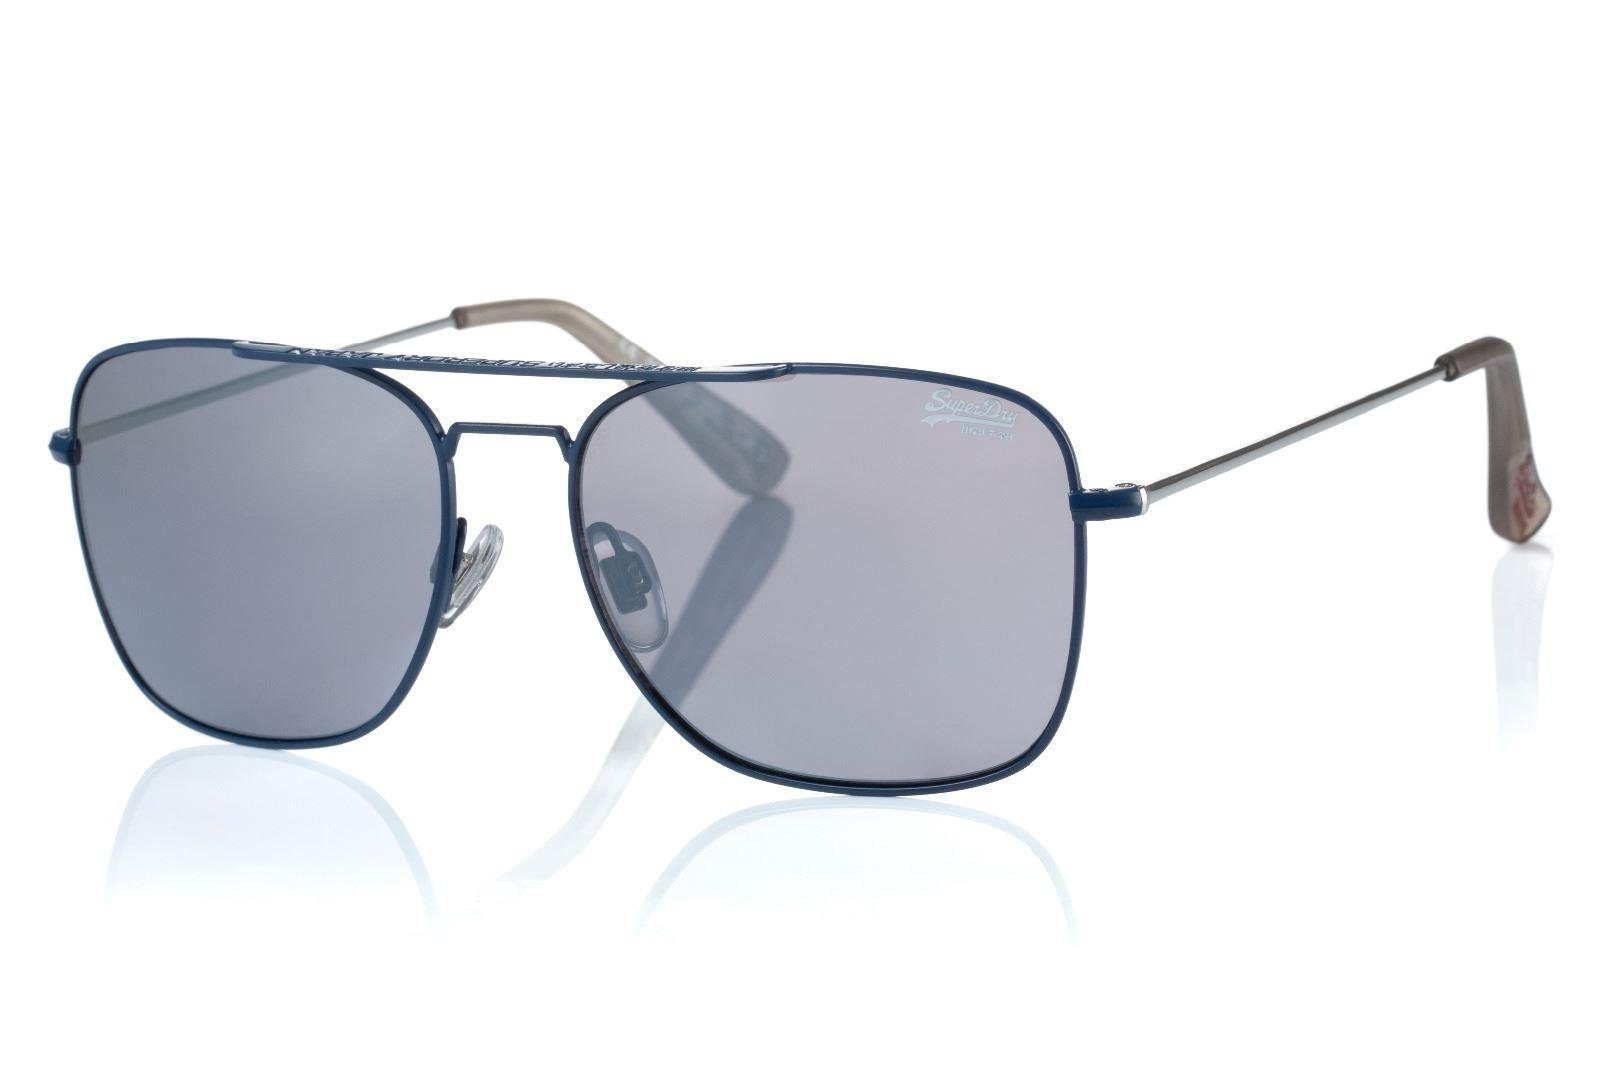 Superdry Sonnenbrille Trident Kategorie 56-16/150 und 212 Kunststoff Metall, 3